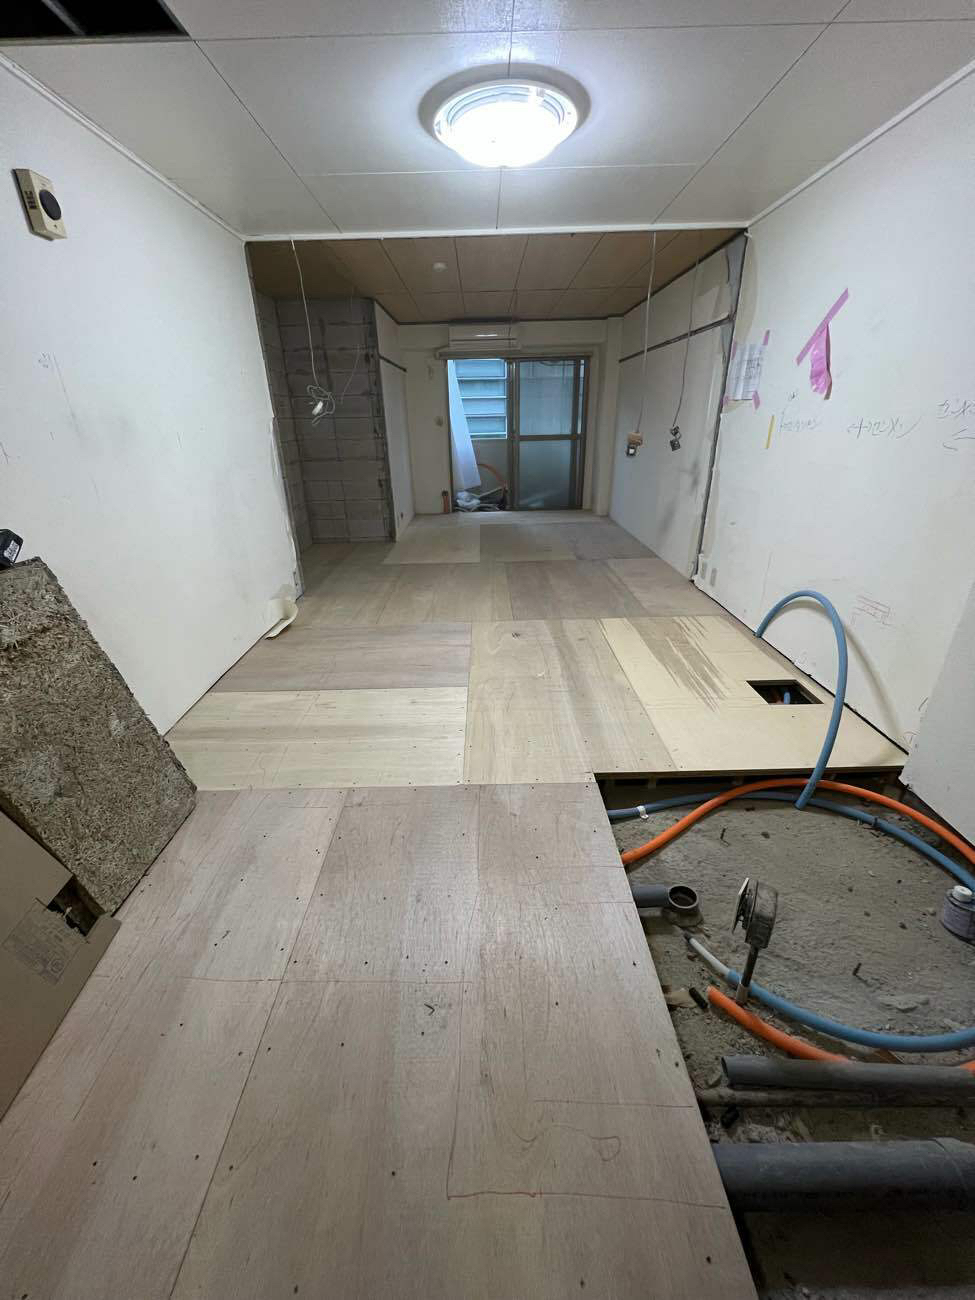 東京都品川区にてマンションの置床工事を行いました。乾式二重床